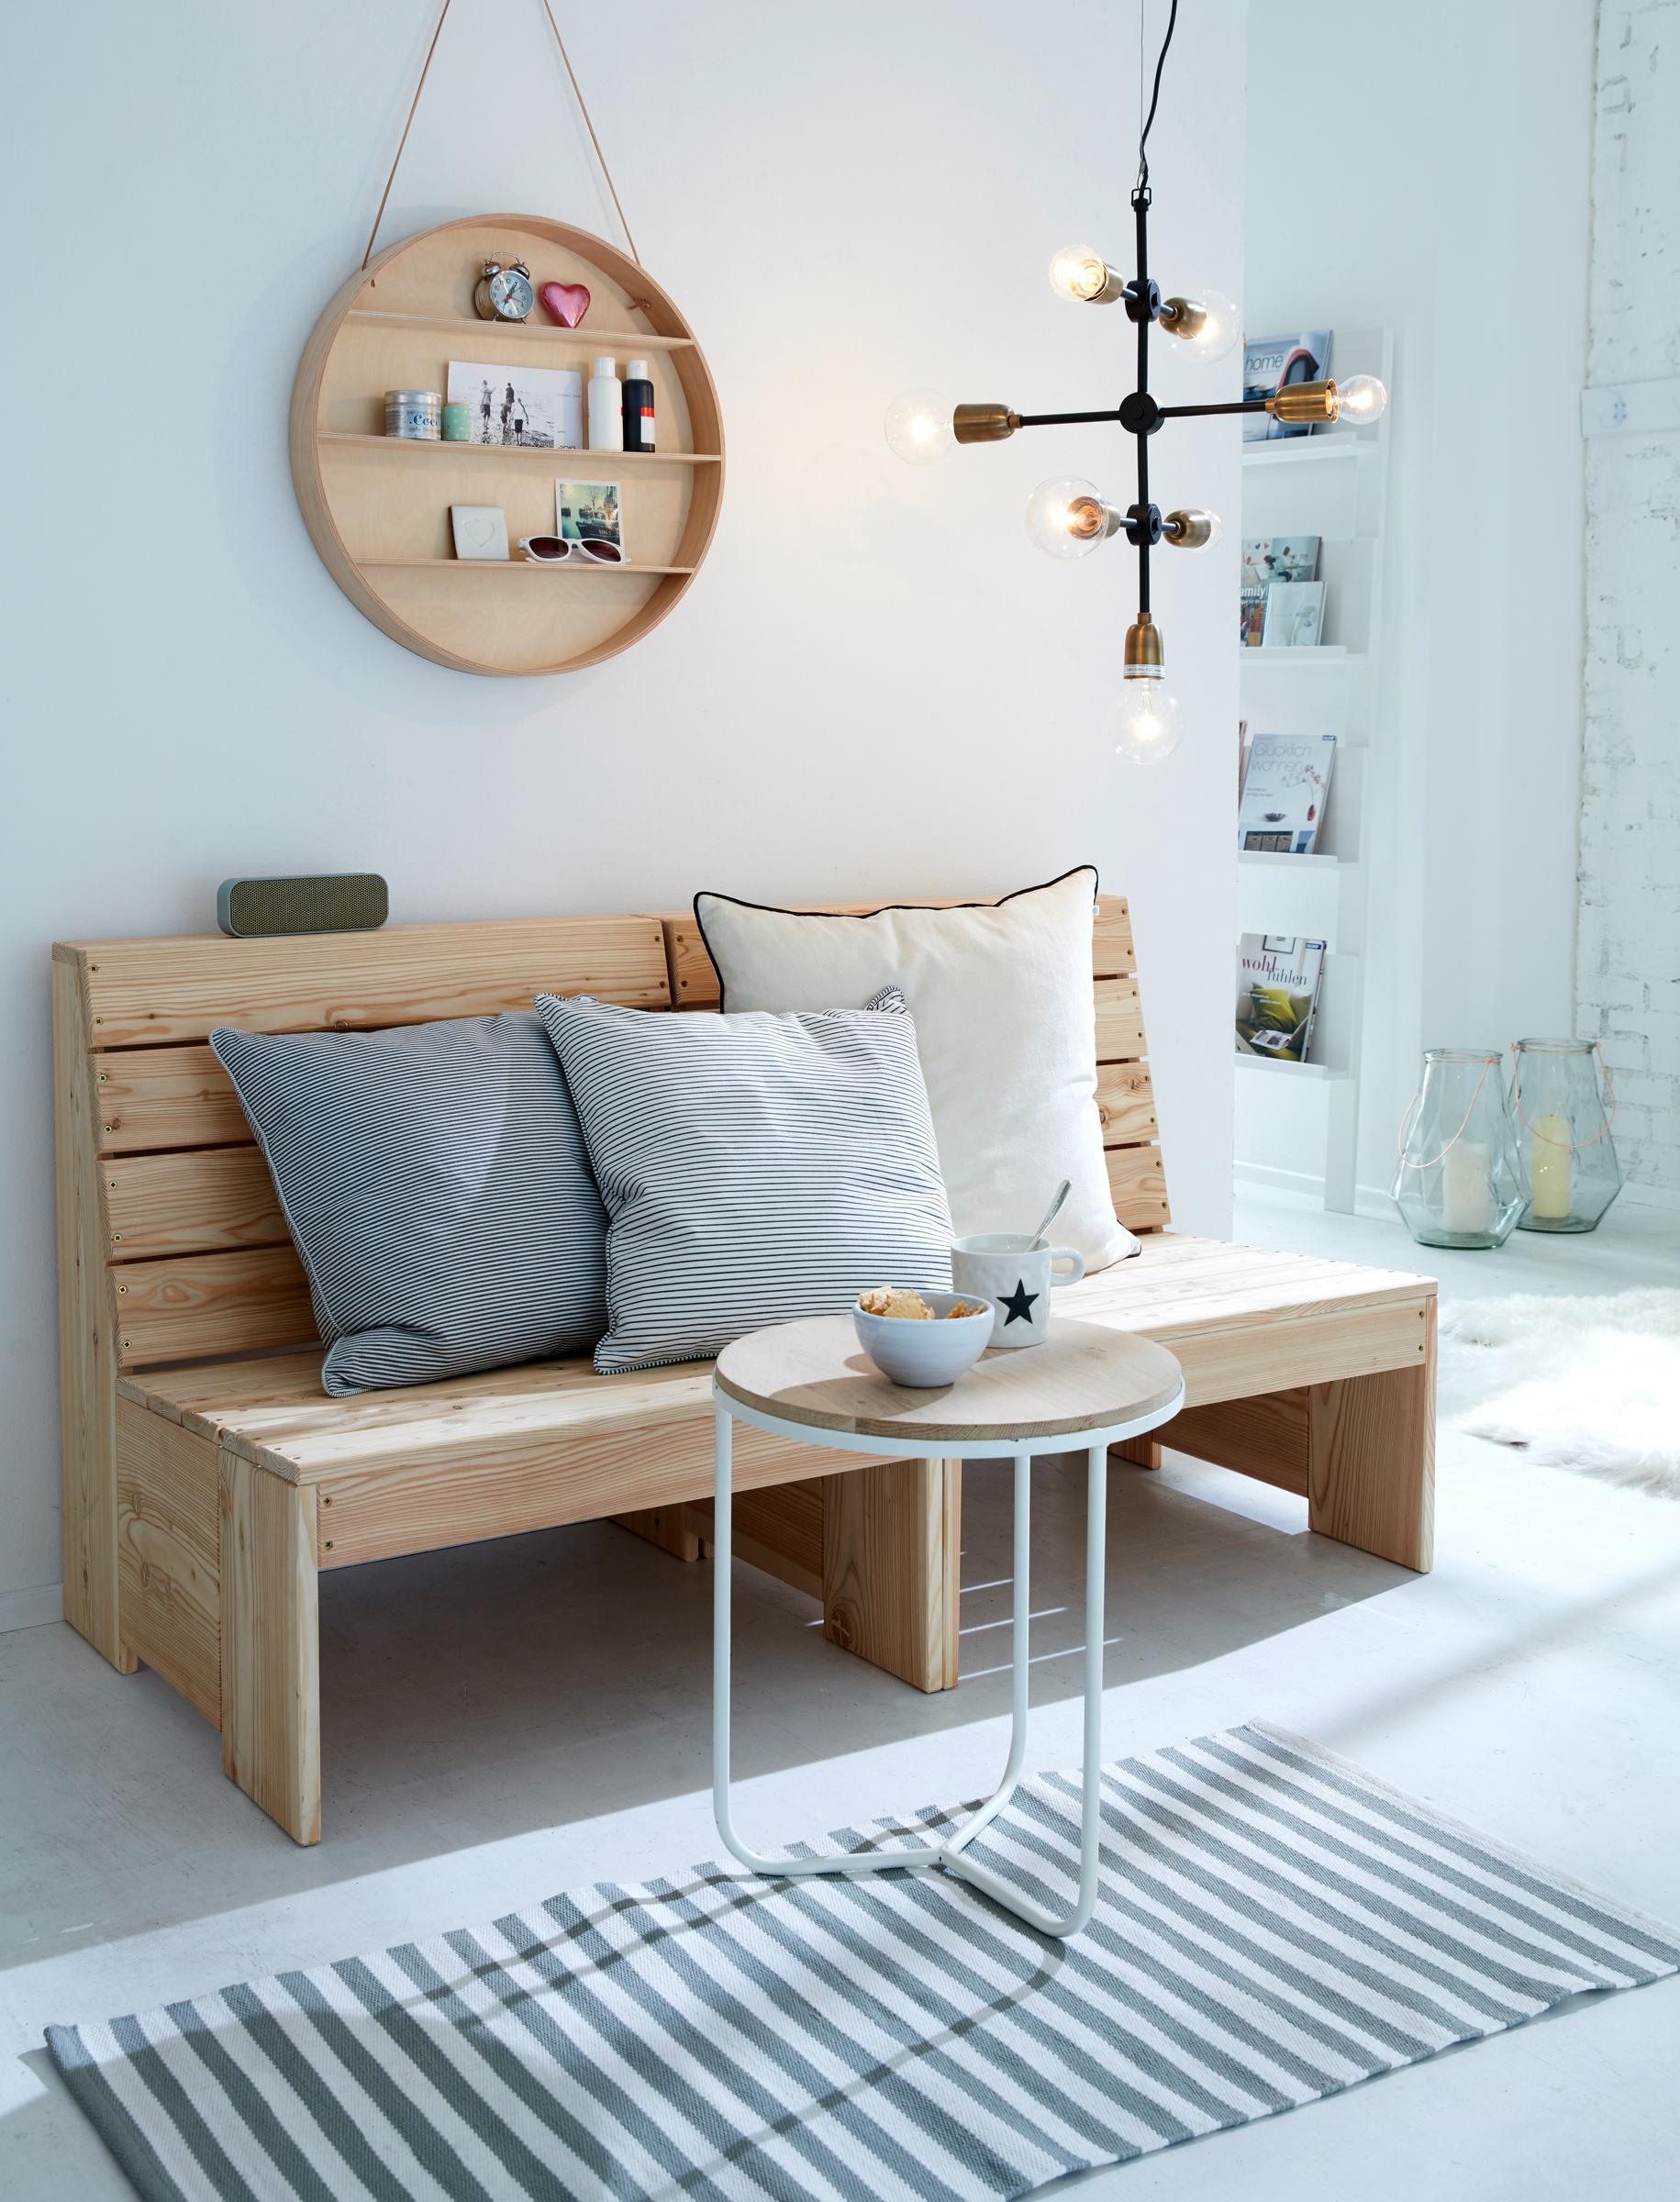 Rustikale Holzbank im Wohnzimmer #holzbank #weißercouchtisch #gestreifterteppich #zimmergestaltung ©car möbel